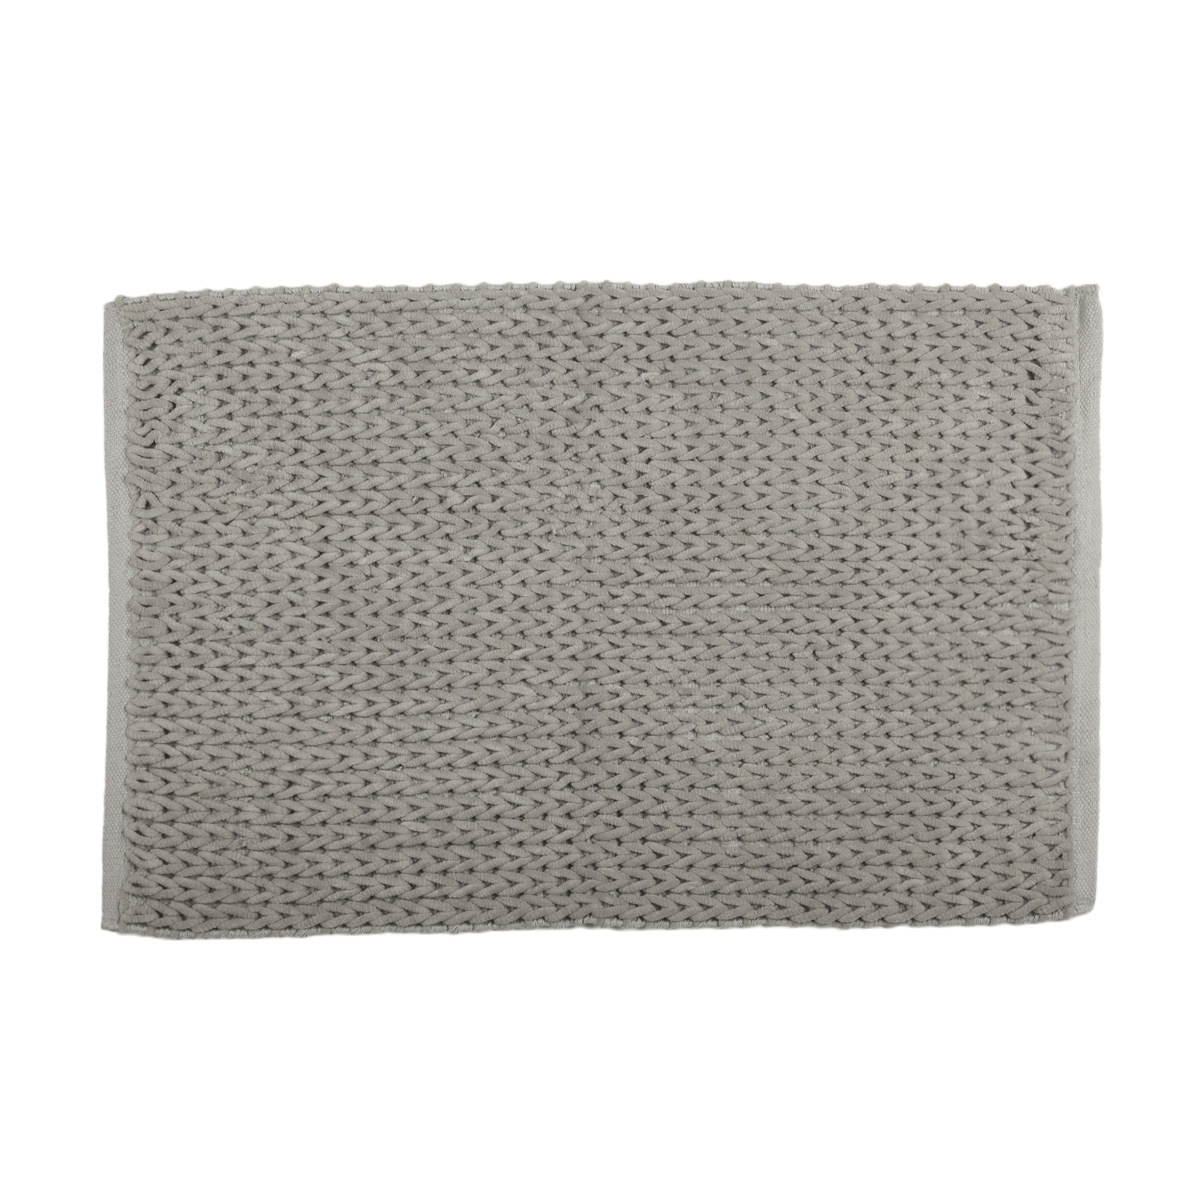 Knit Woven Bath Mat - Grey | Kmart